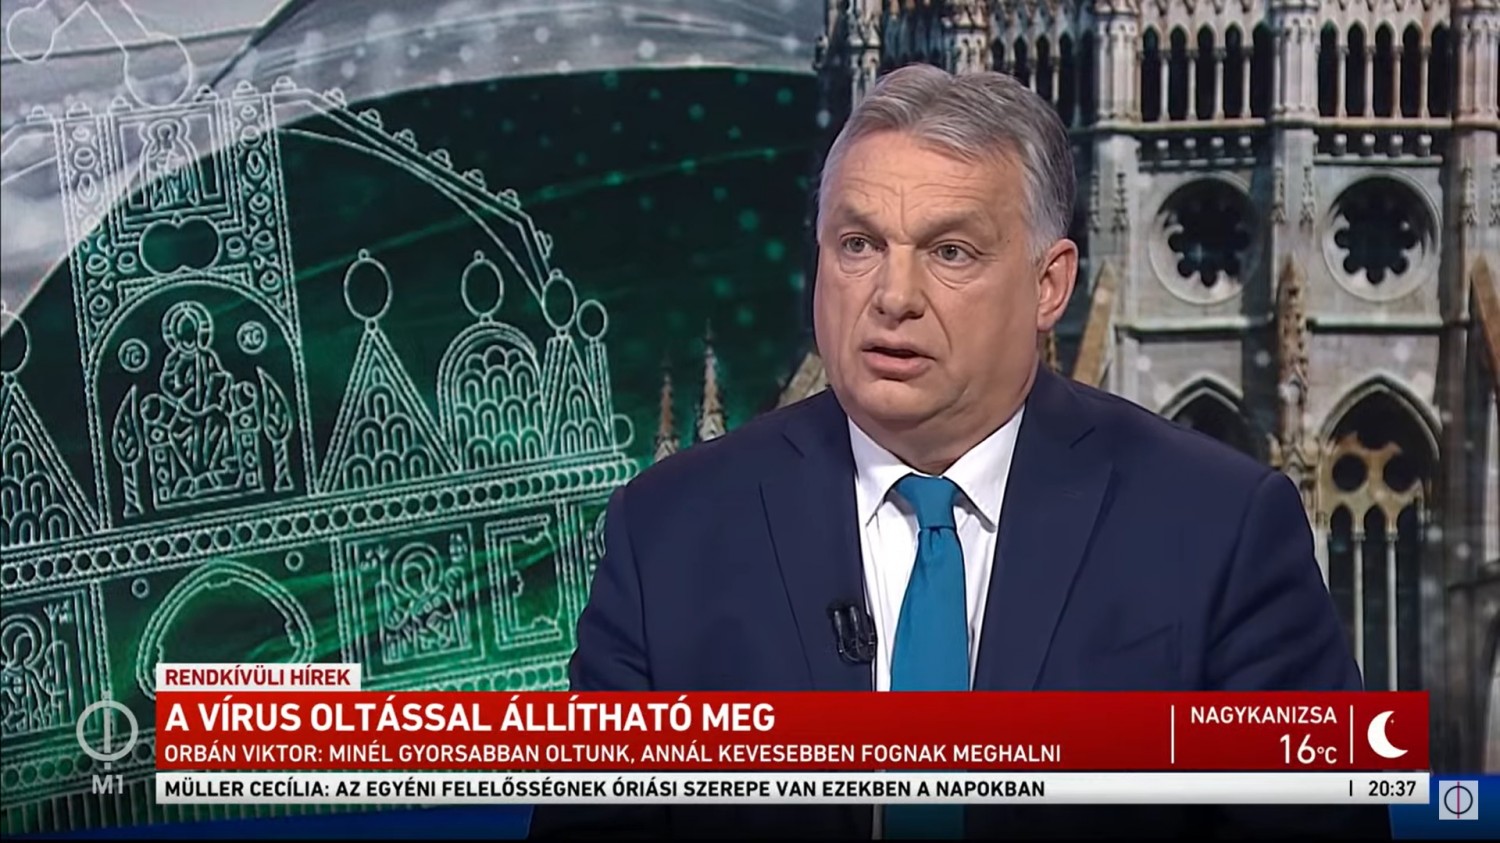 Orbán: A vírus oltással állítható meg (Frissítve!)